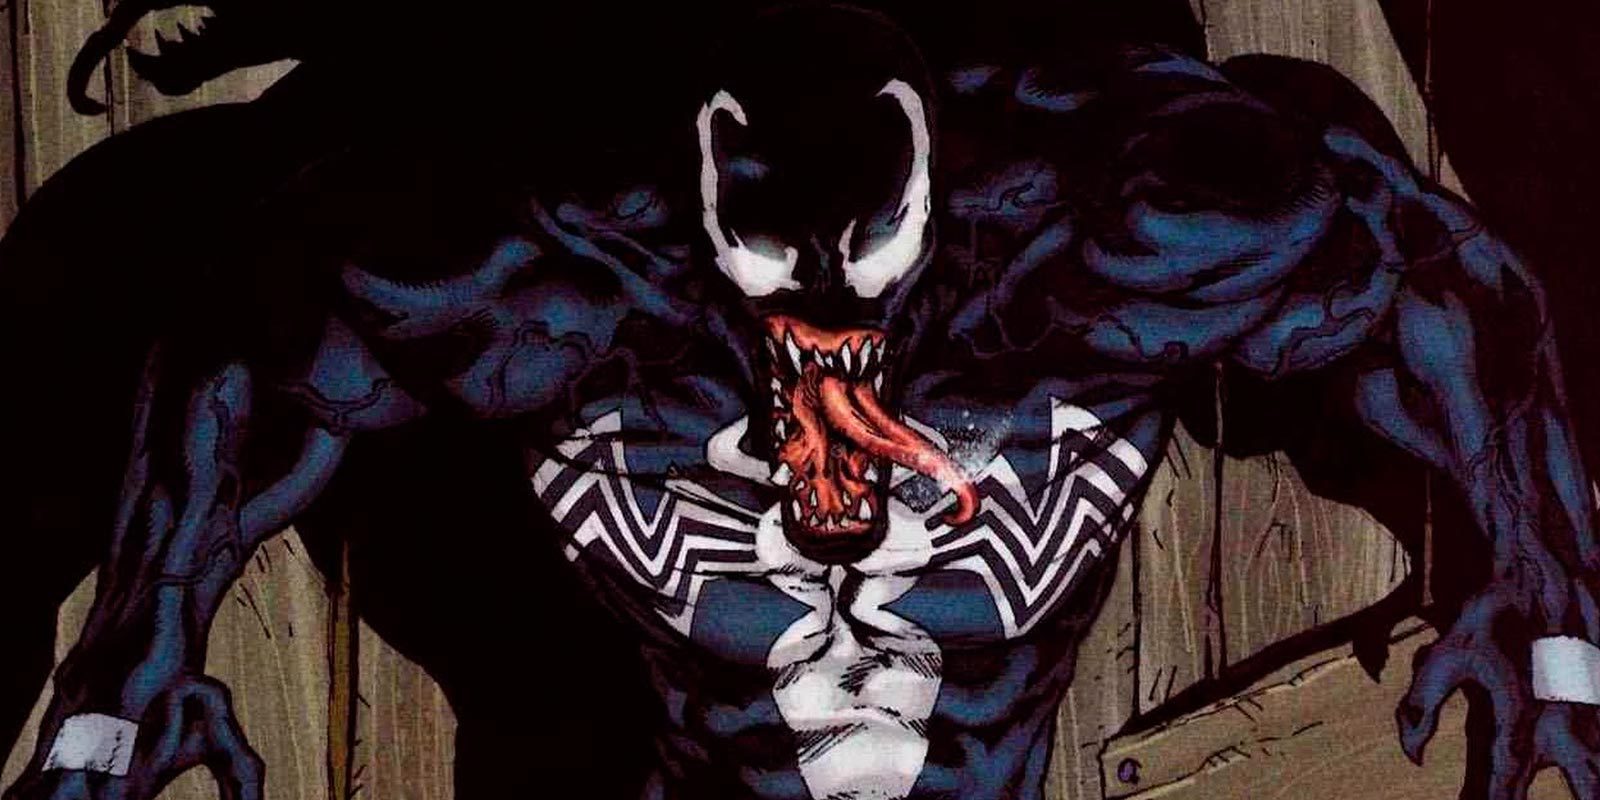 Venom tendrá su propia película y se estrenará en 2018